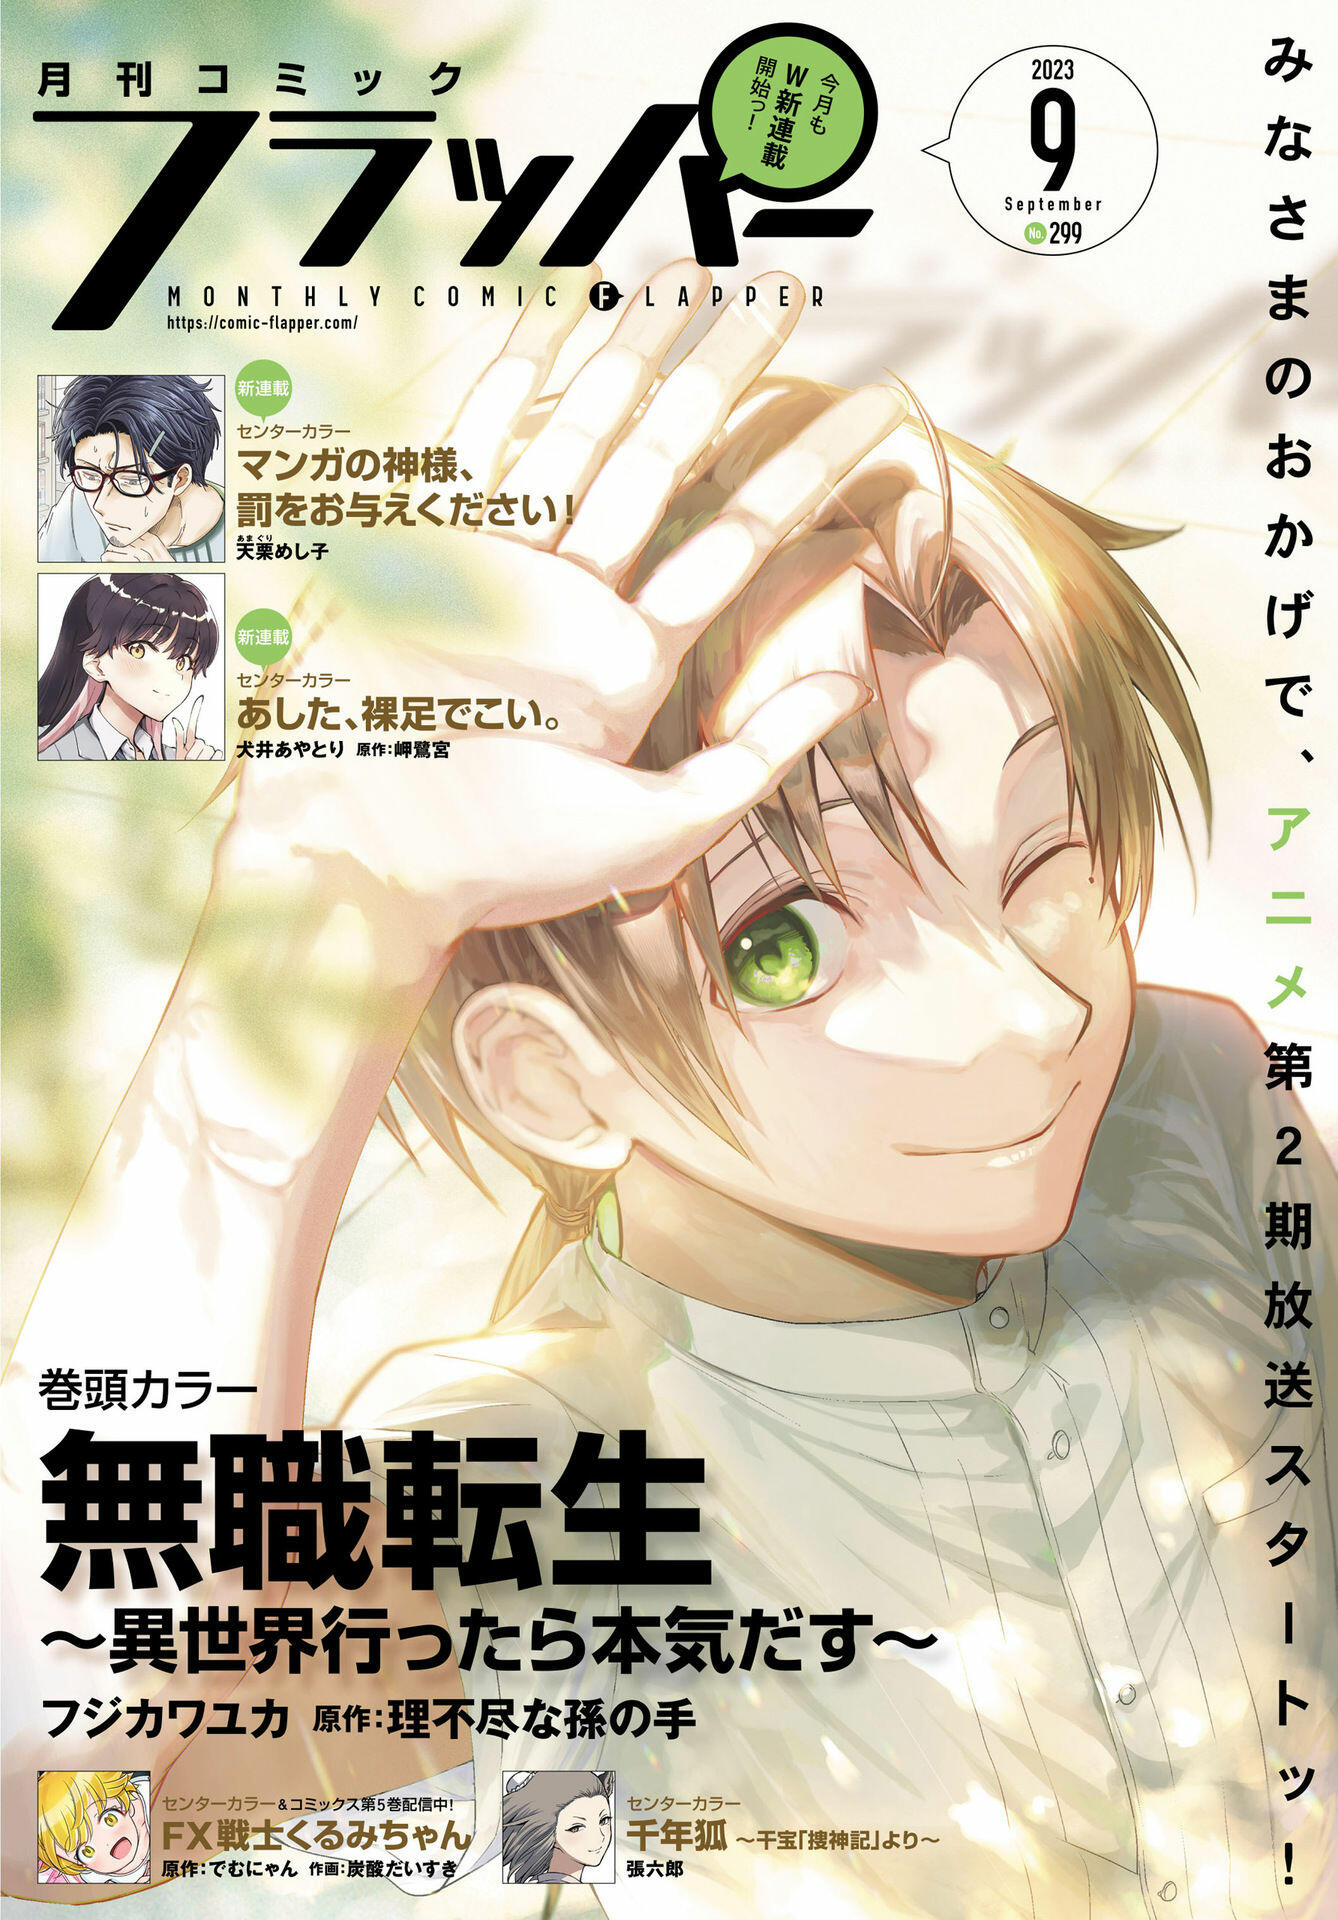 Mushoku Tensei: Jobless Reincarnation, Chapter 85 - Mushoku Tensei: Jobless  Reincarnation Manga Online